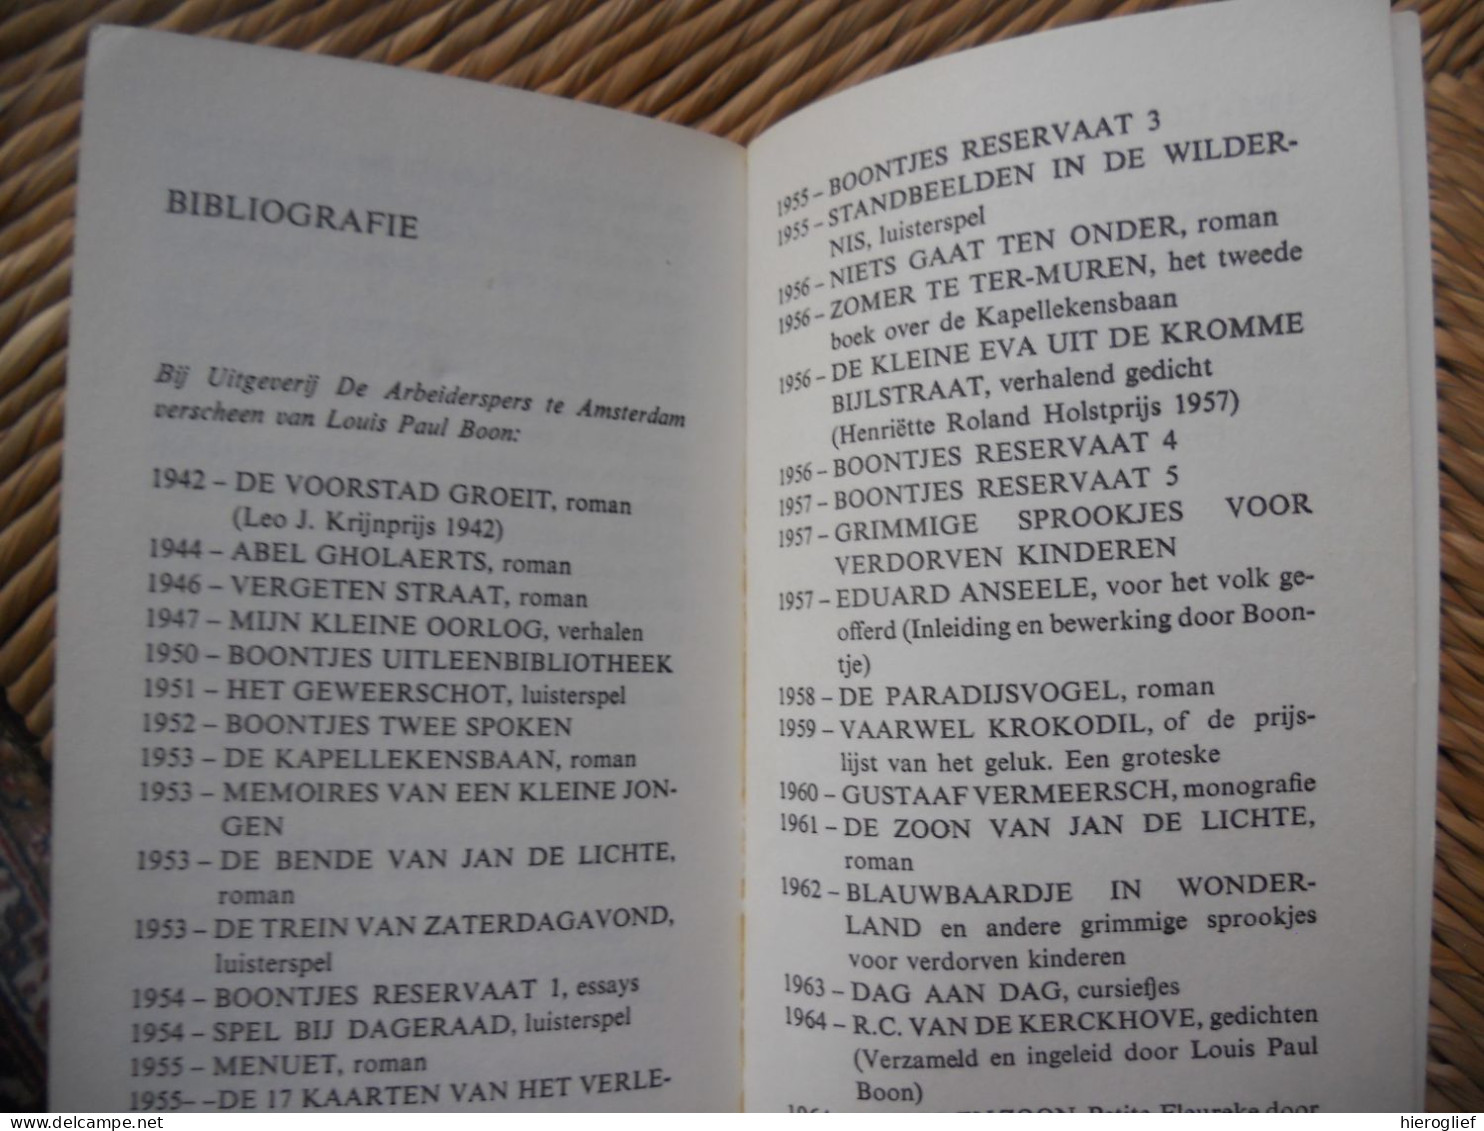 16 Van Louis Paul Boon - Zestien Schetsen Van Nederland - 1968 Aalst Erembodegem Vlaams Schrijver Avenue-reeks 3 - Literature